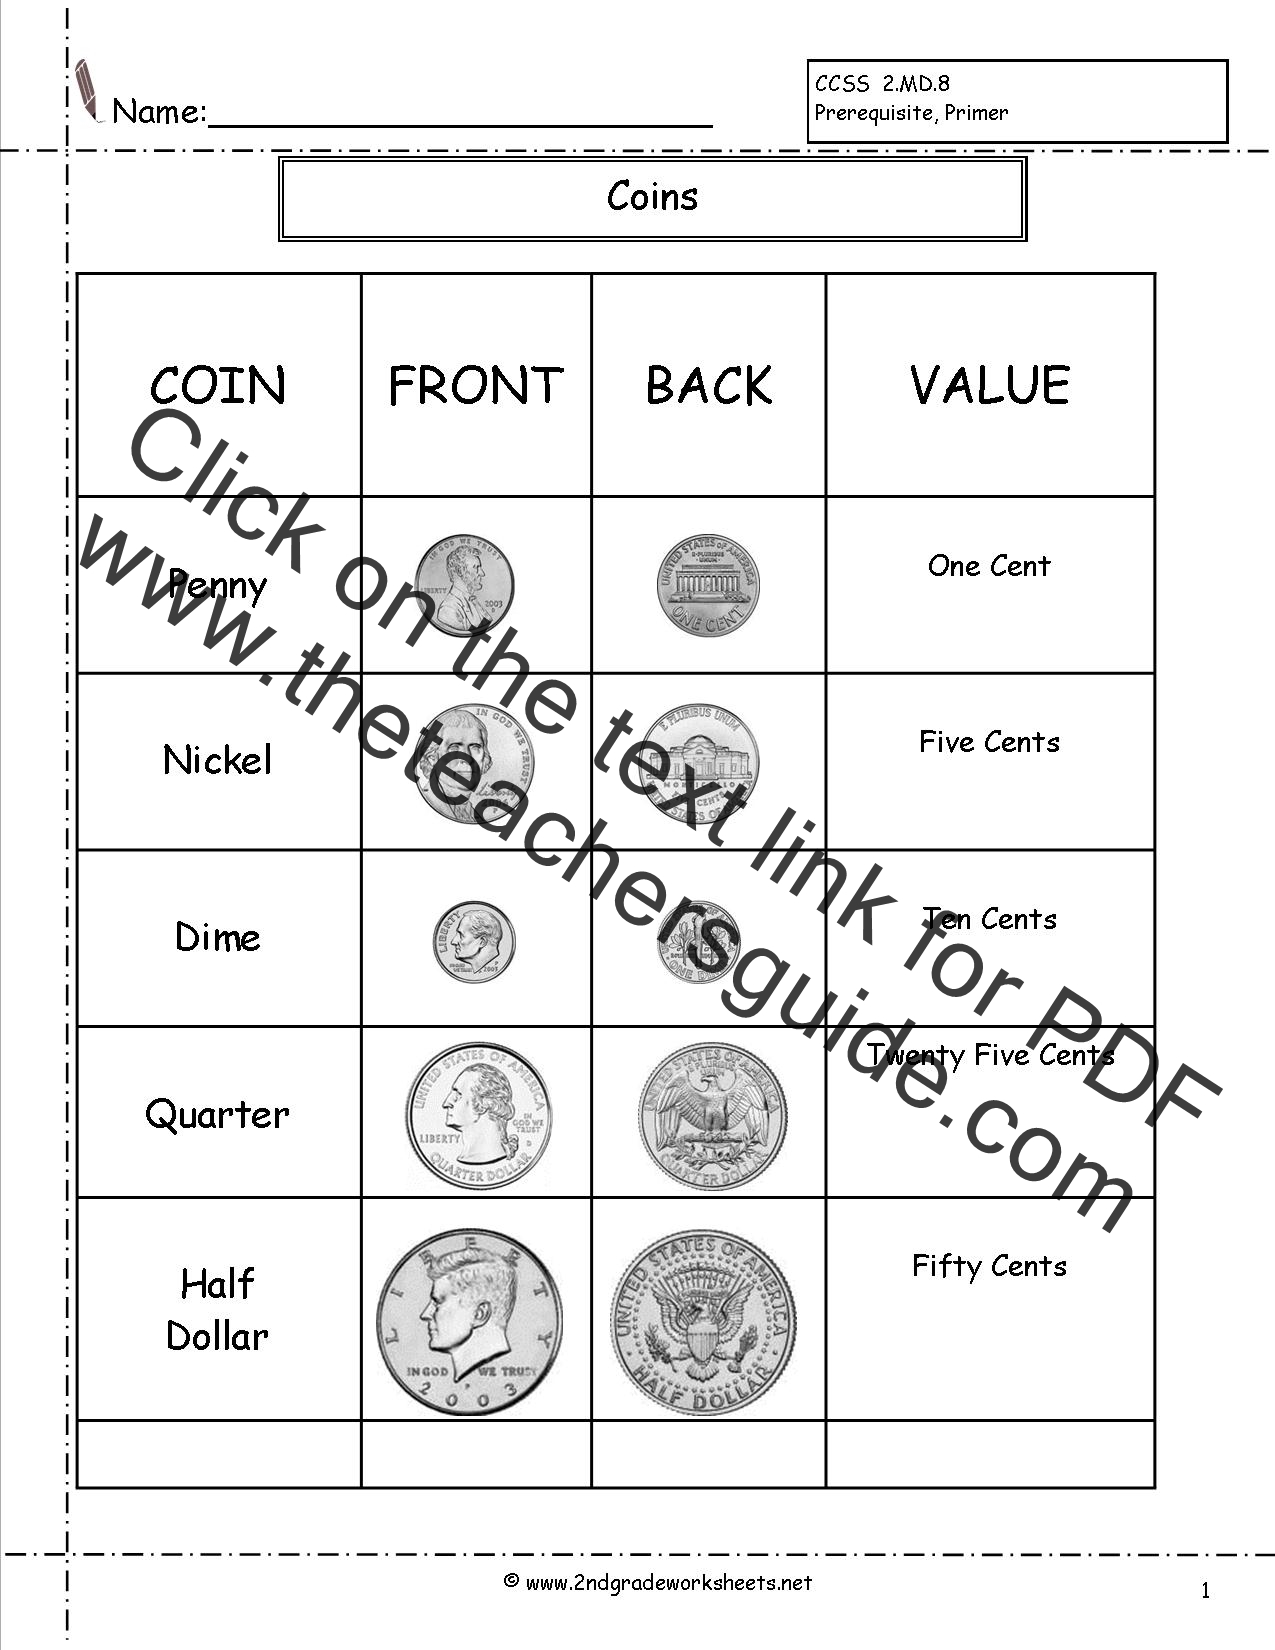 value of coins worksheet pdf